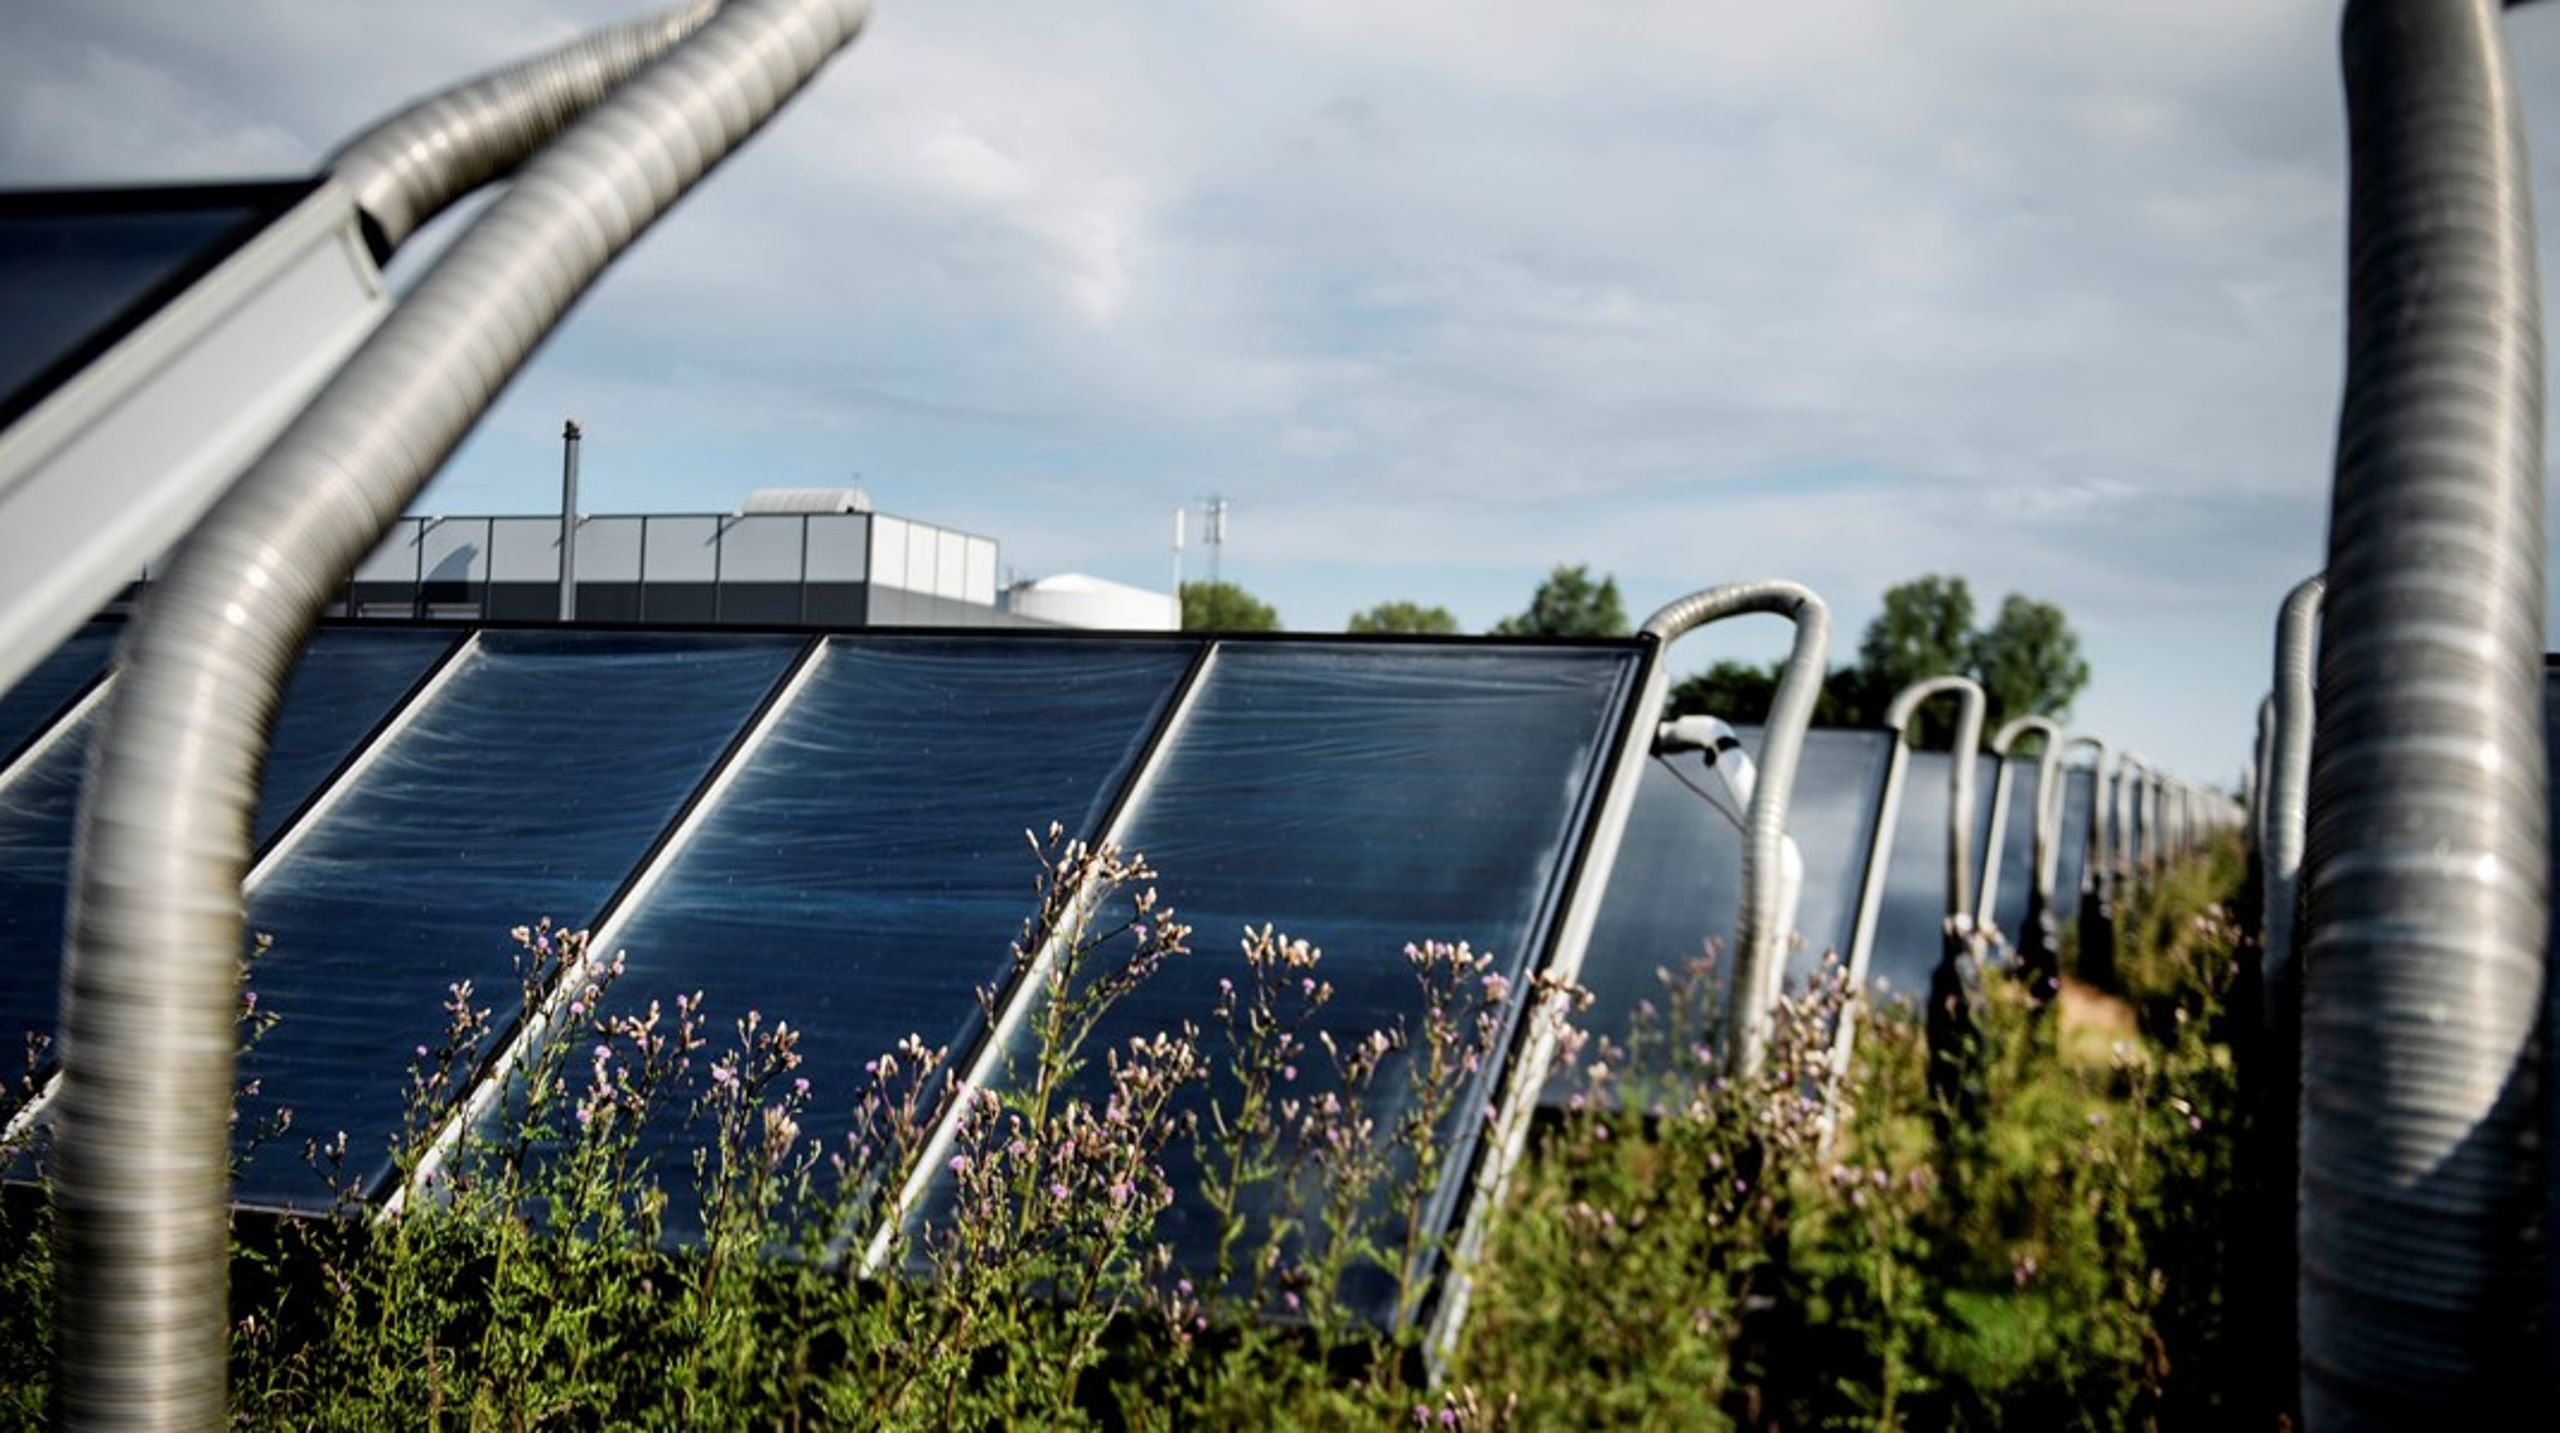 I de kommende år vil EU’s bygningsdirektivet ændre på landskabet i Danmark med solceller på tagene og el-ladestandere ved bygninger og parkeringspladser, som de synlige tegn på den grønne forandring, skriver&nbsp;Morten Helveg Petersen (R).